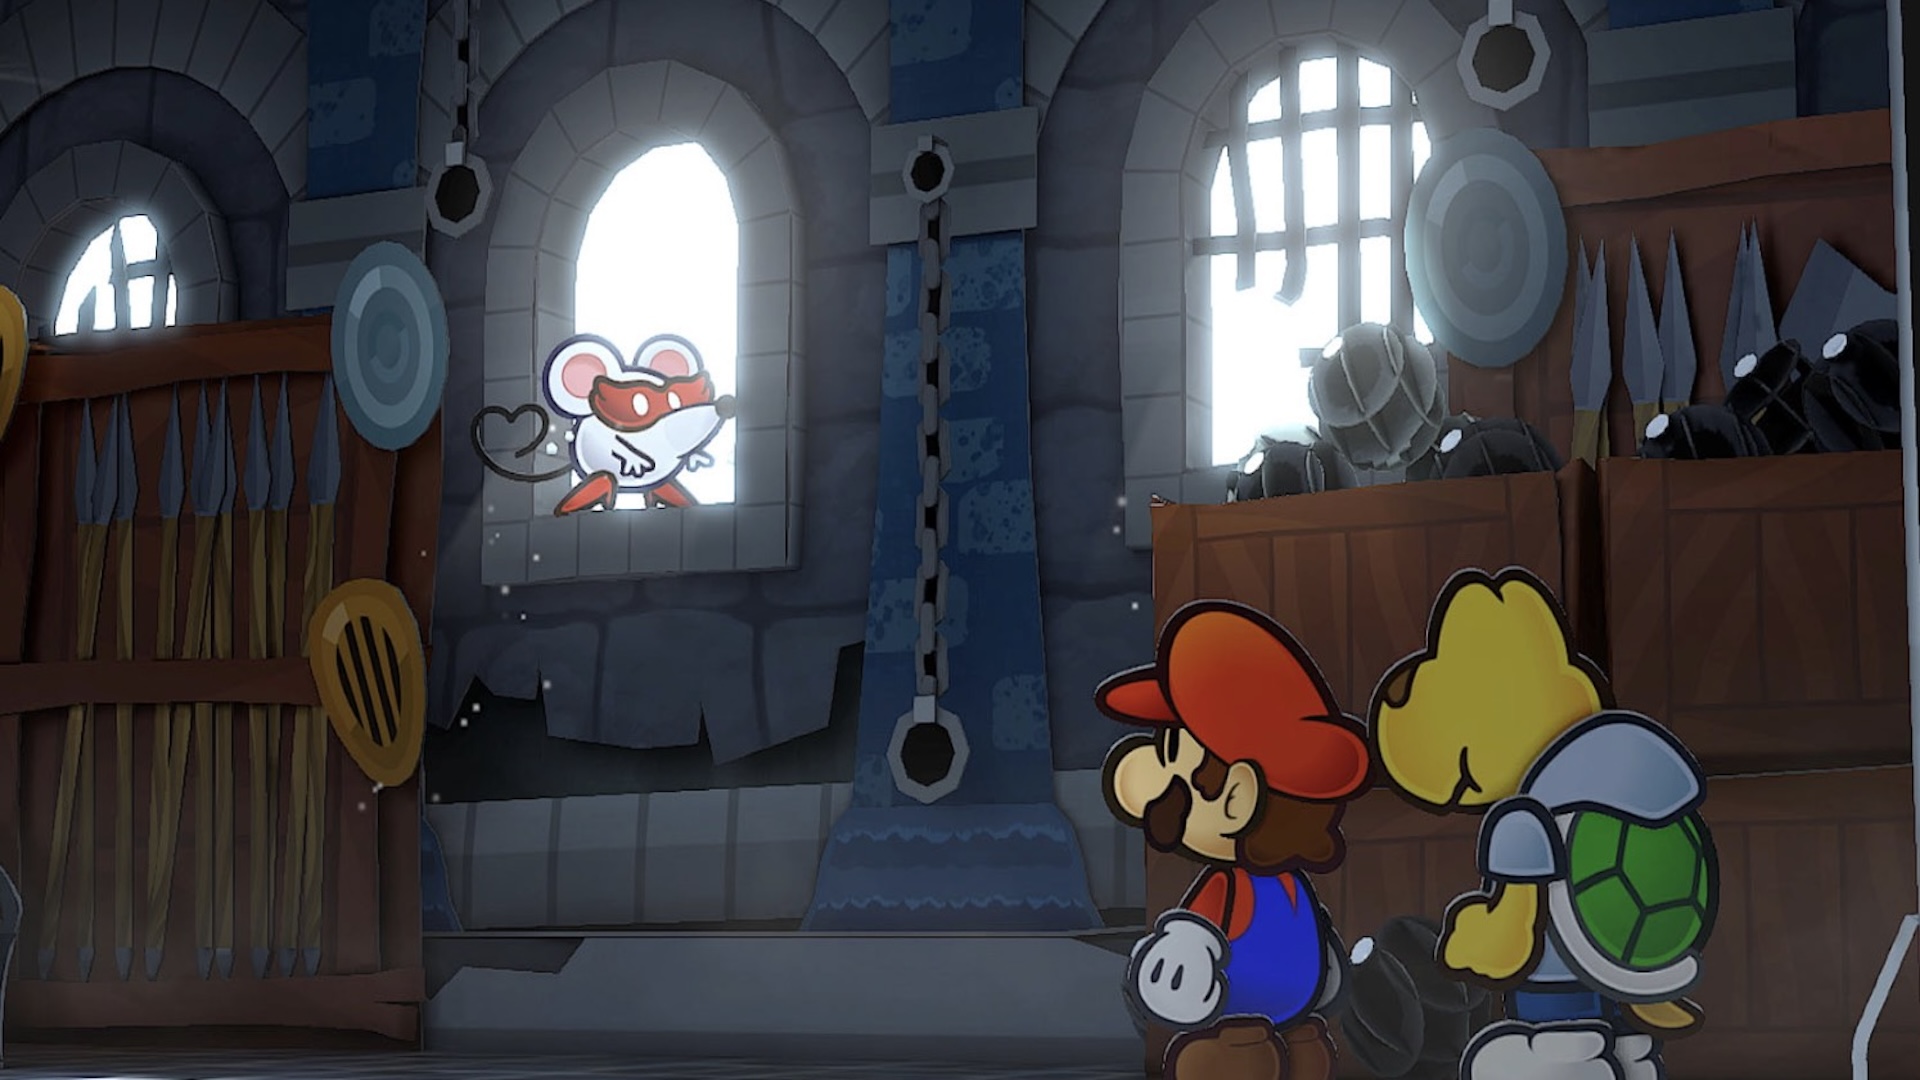 Papir Mario og en Koopa står side om side og ser inn i en dekorert kirkeinngang